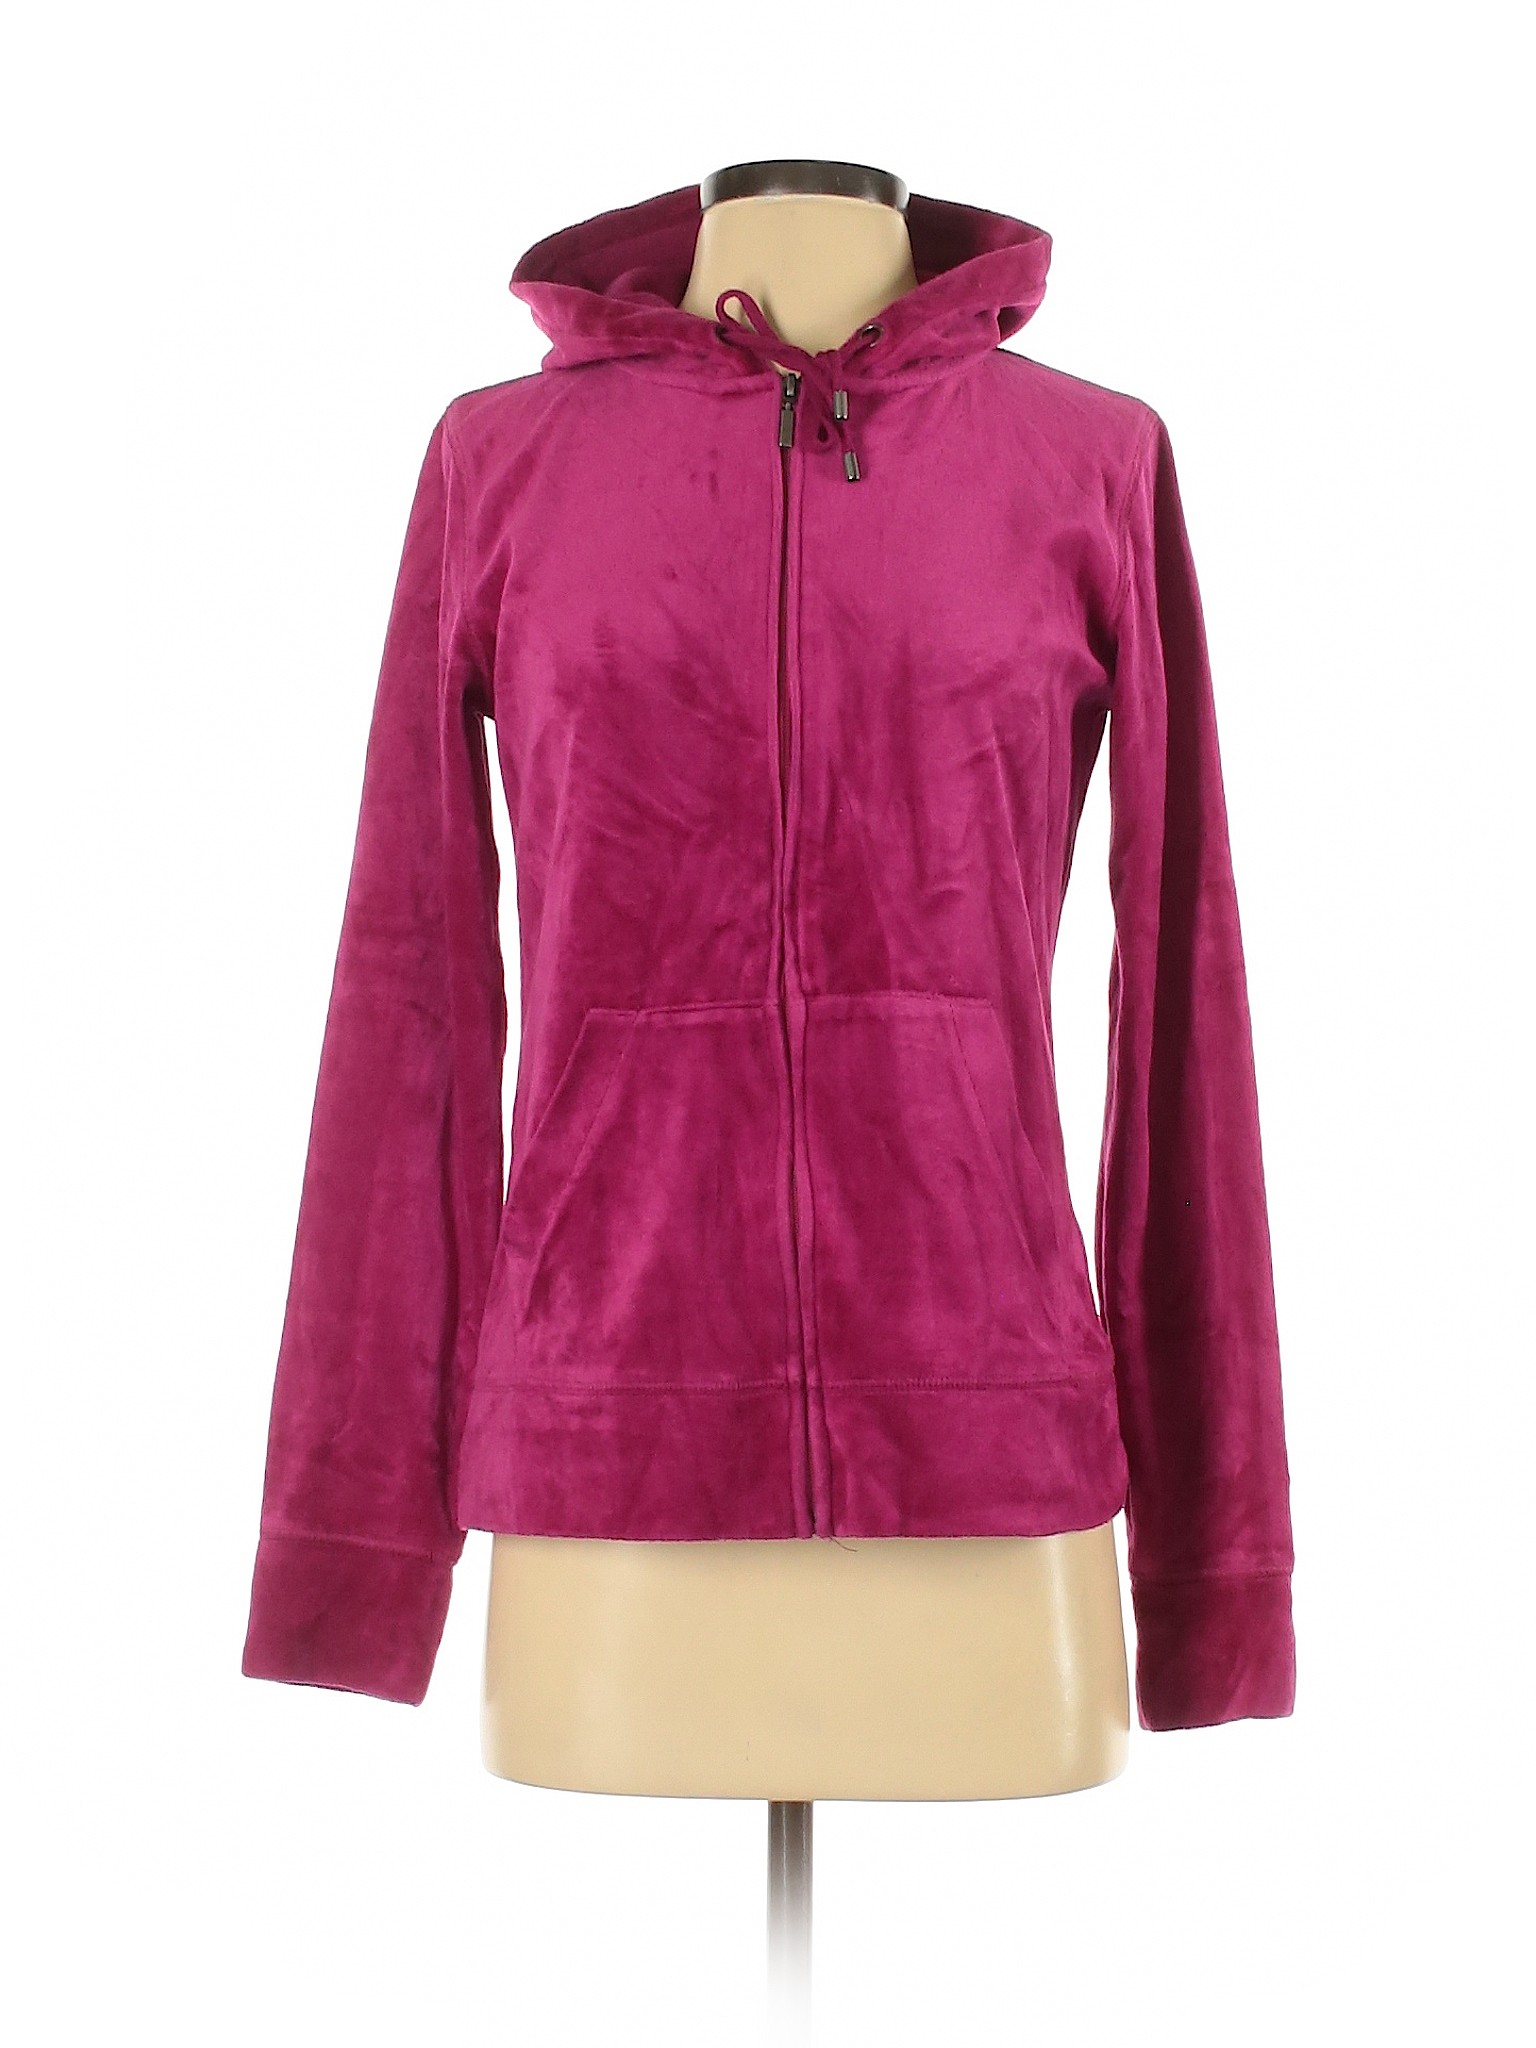 Merona Women Purple Zip Up Hoodie S | eBay